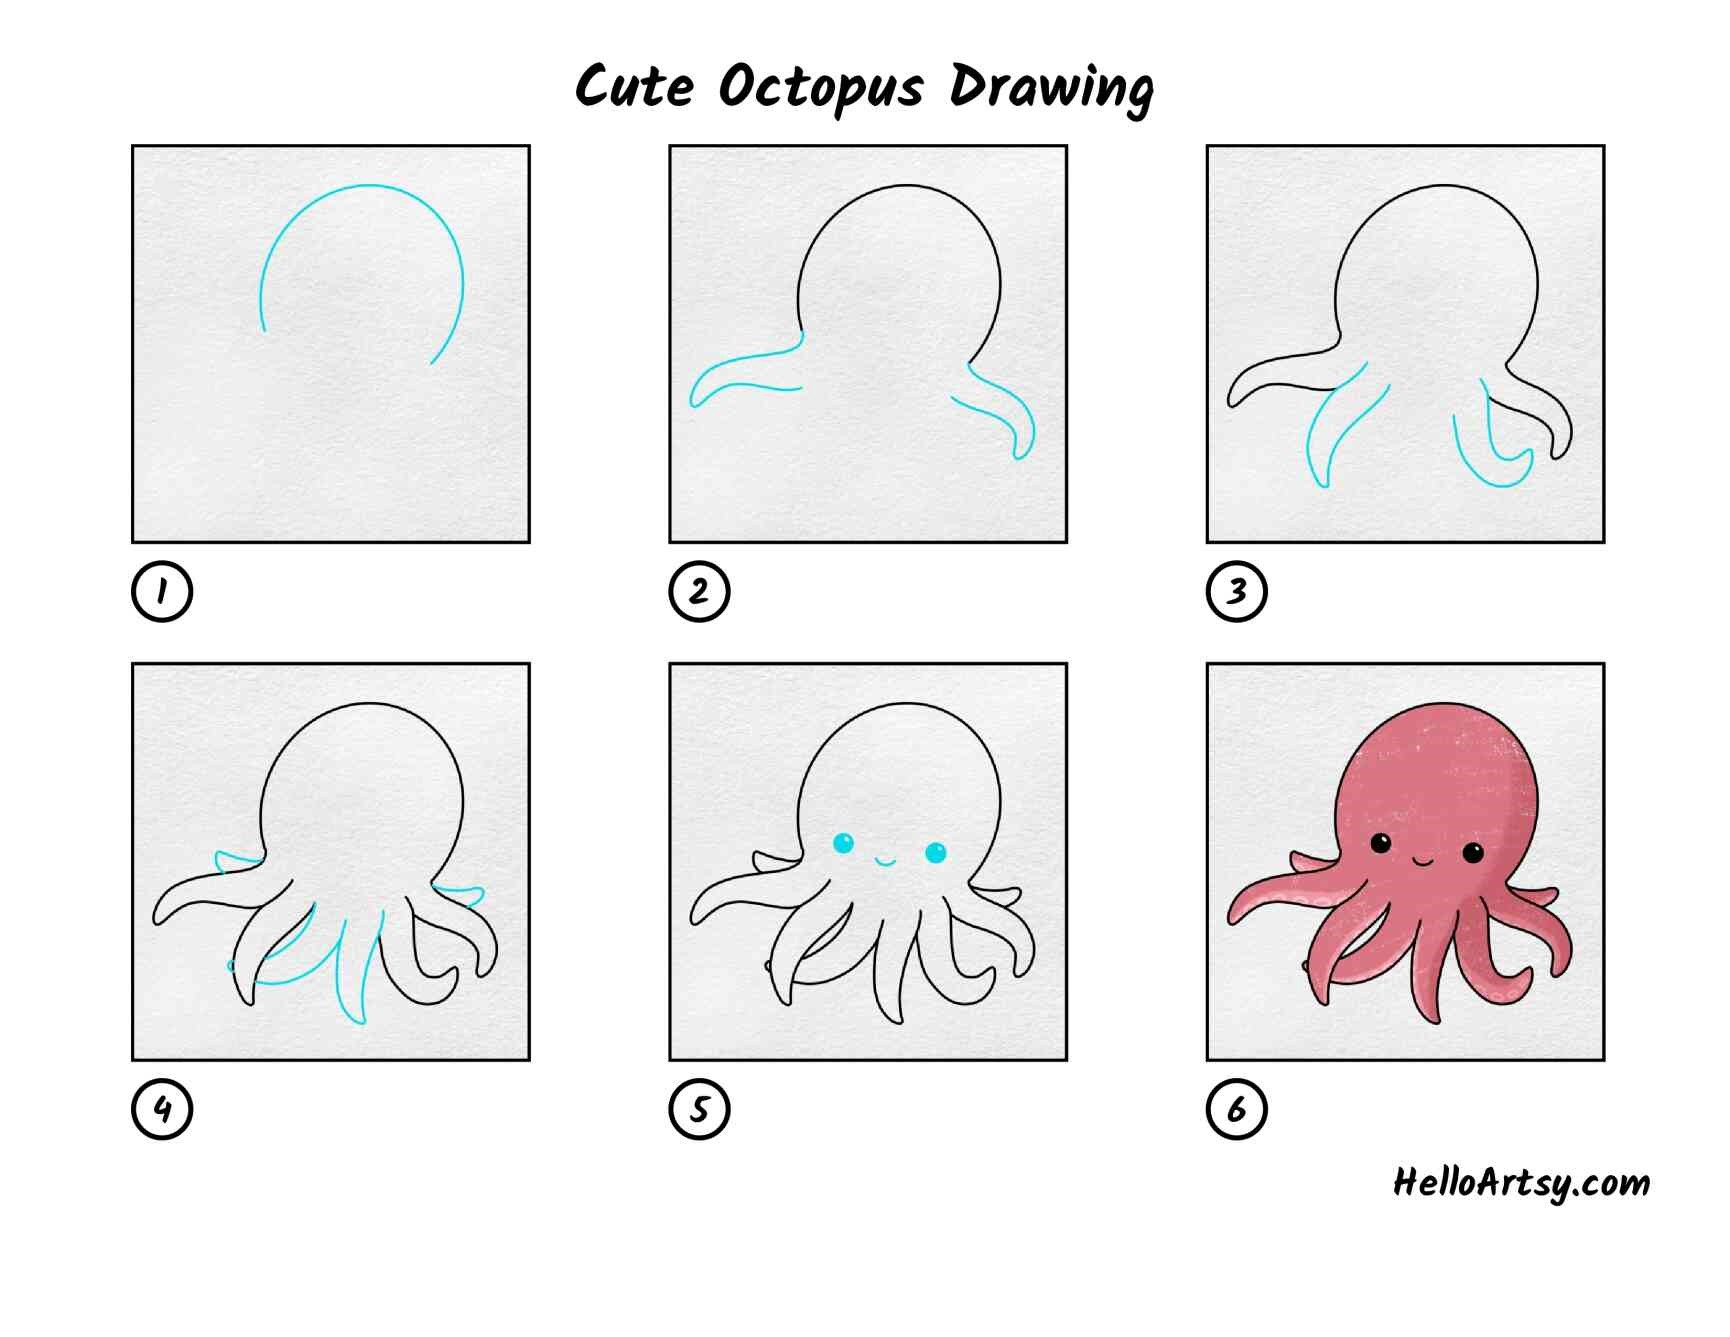 Oktopus-Idee 4 zeichnen ideen